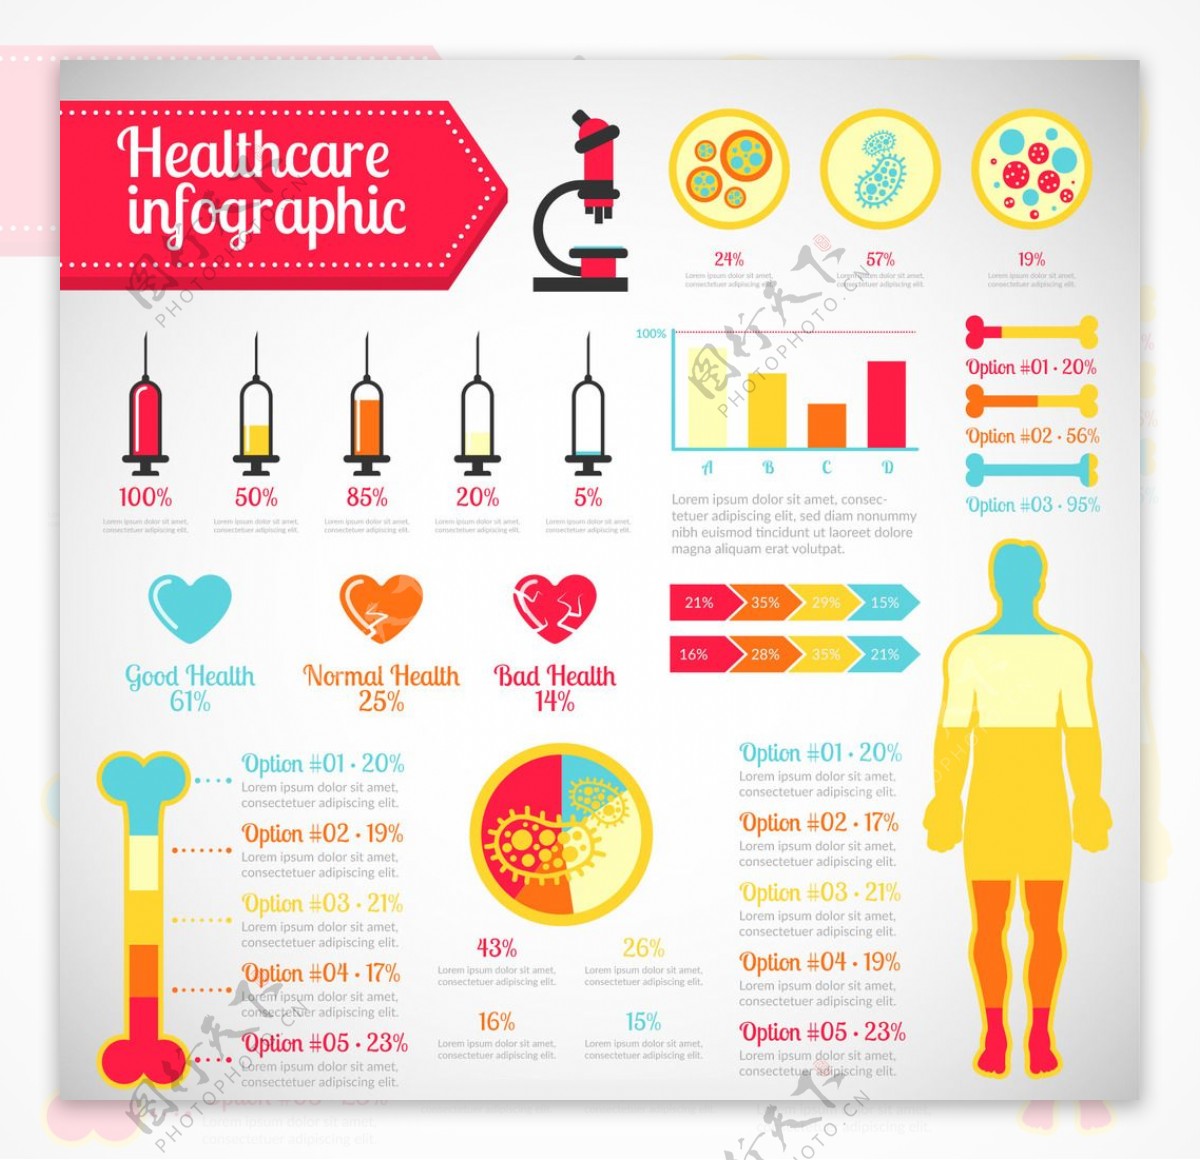 医疗保健信息图表